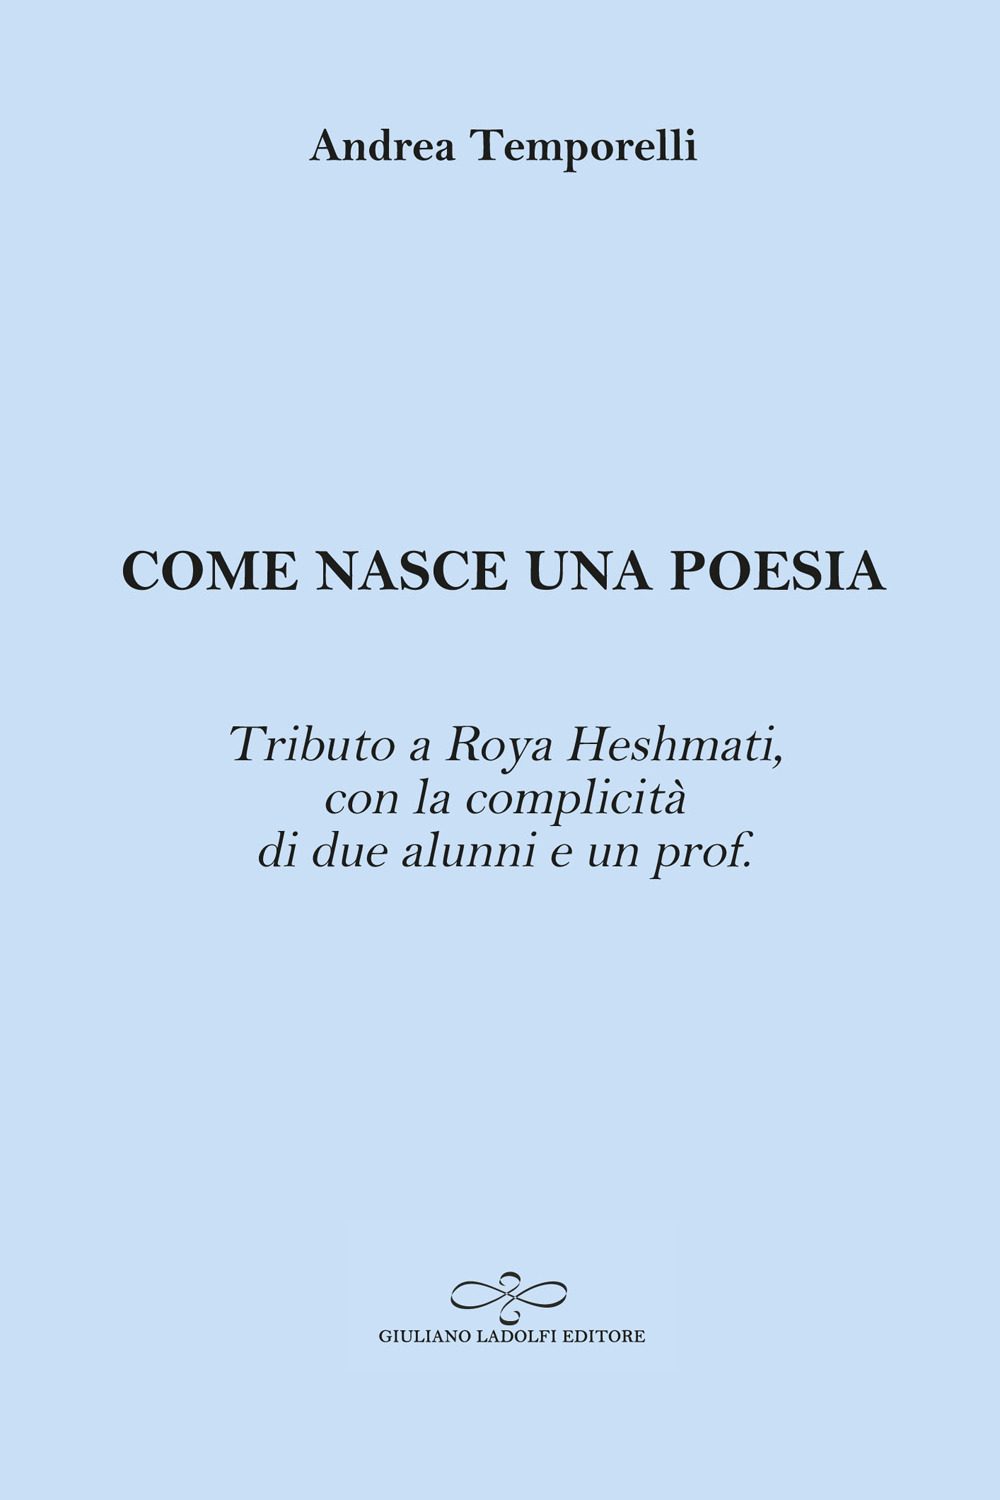 Come nasce una poesia. Tributo a Roya Heshmati, con la complicità di due alunni e un prof.